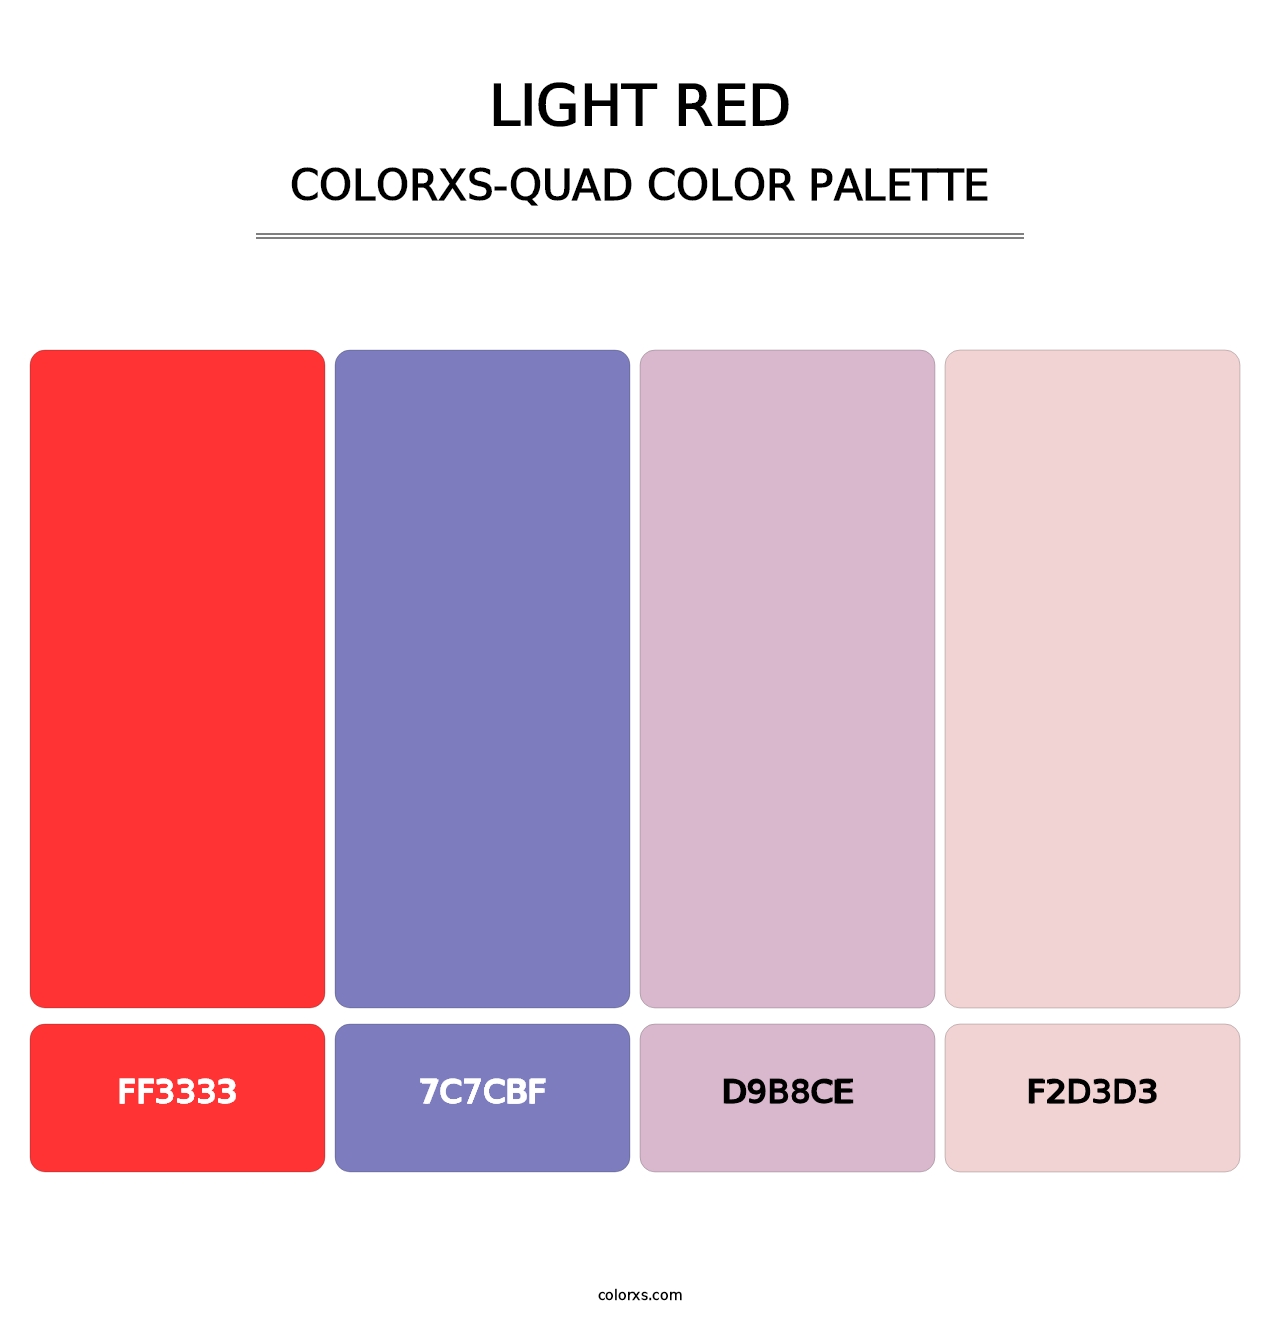 Light Red - Colorxs Quad Palette